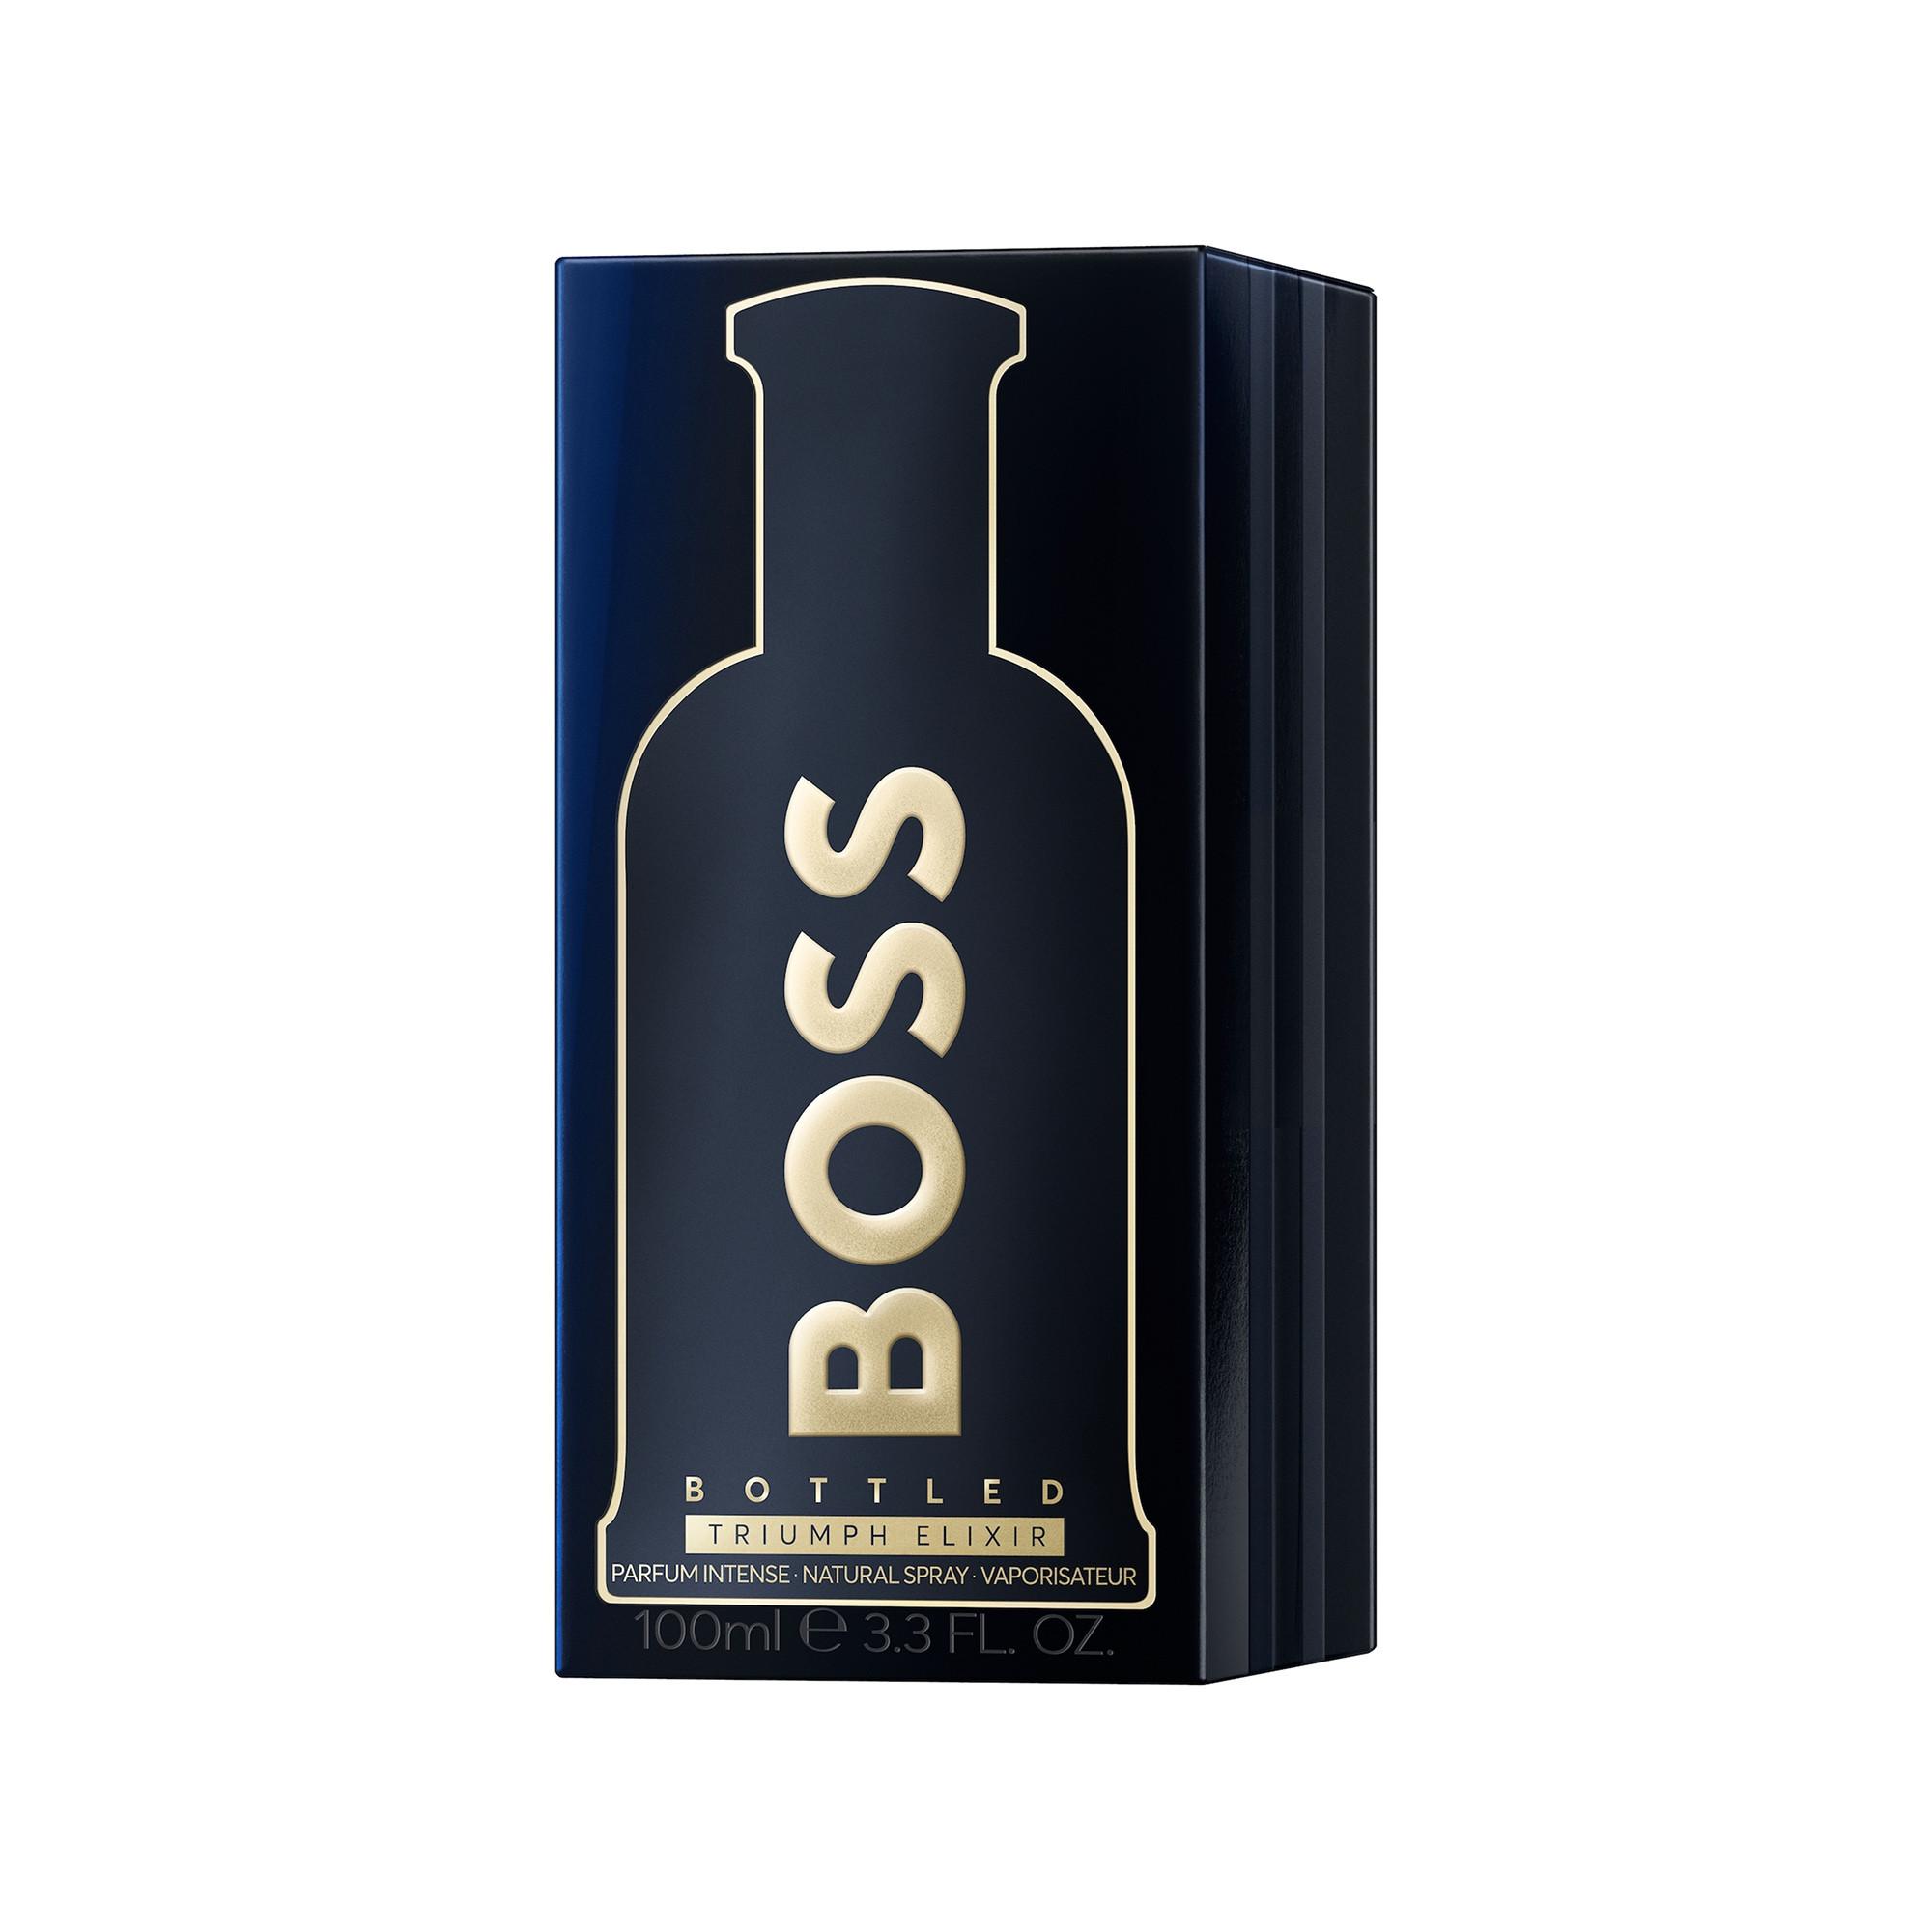 HUGO BOSS Triumph Elixir Parfum Intense 